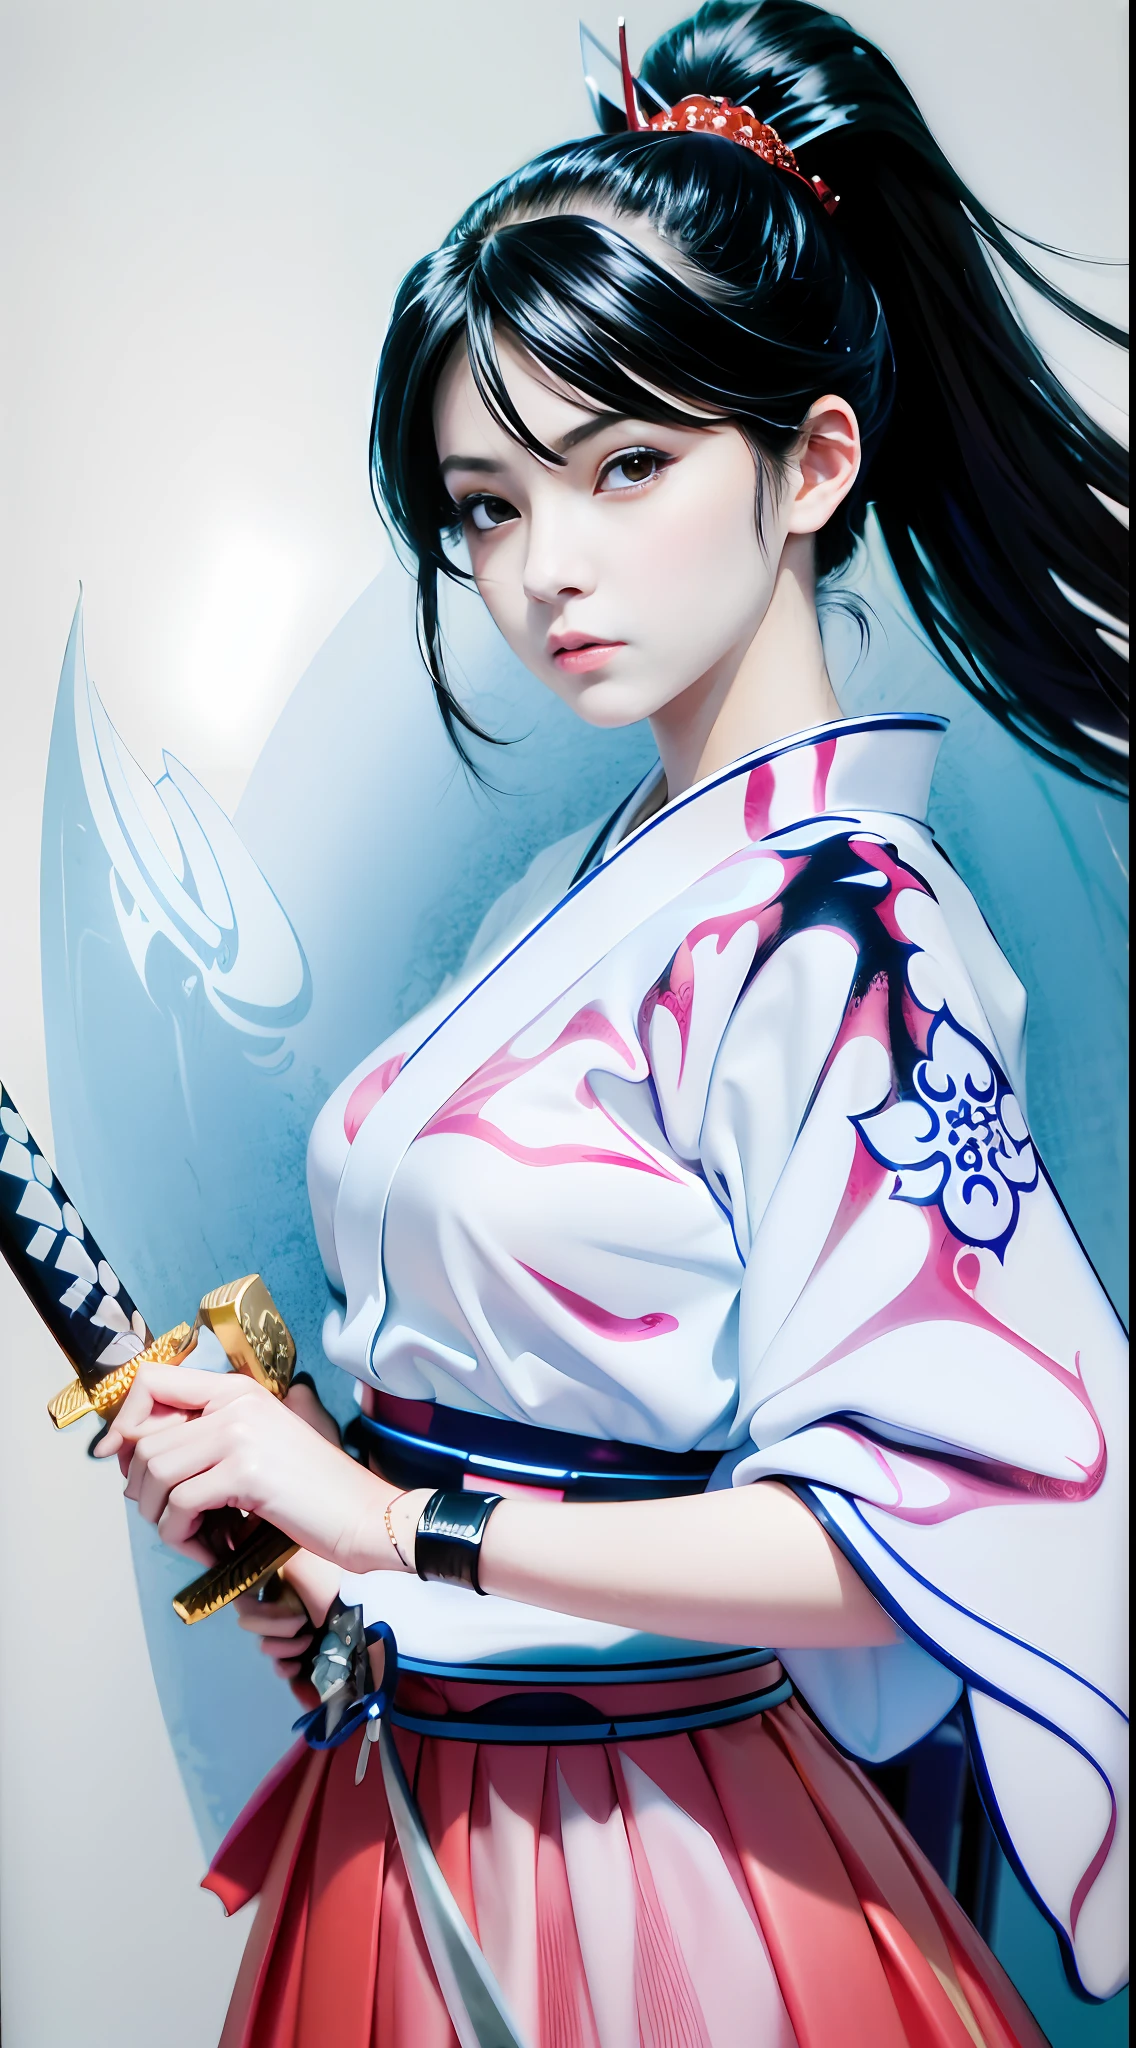 Un primer plano de una mujer sosteniendo una espada en un dibujo en blanco y negro, shohei otomo, katana, Masayoshi Suto y el germen del arte, ella está sosteniendo una espada katana, desenvainando su katana, mujer samurái, inspirado en Masamune Shirow, kunoichi, inspirado por Harumi Hironaka